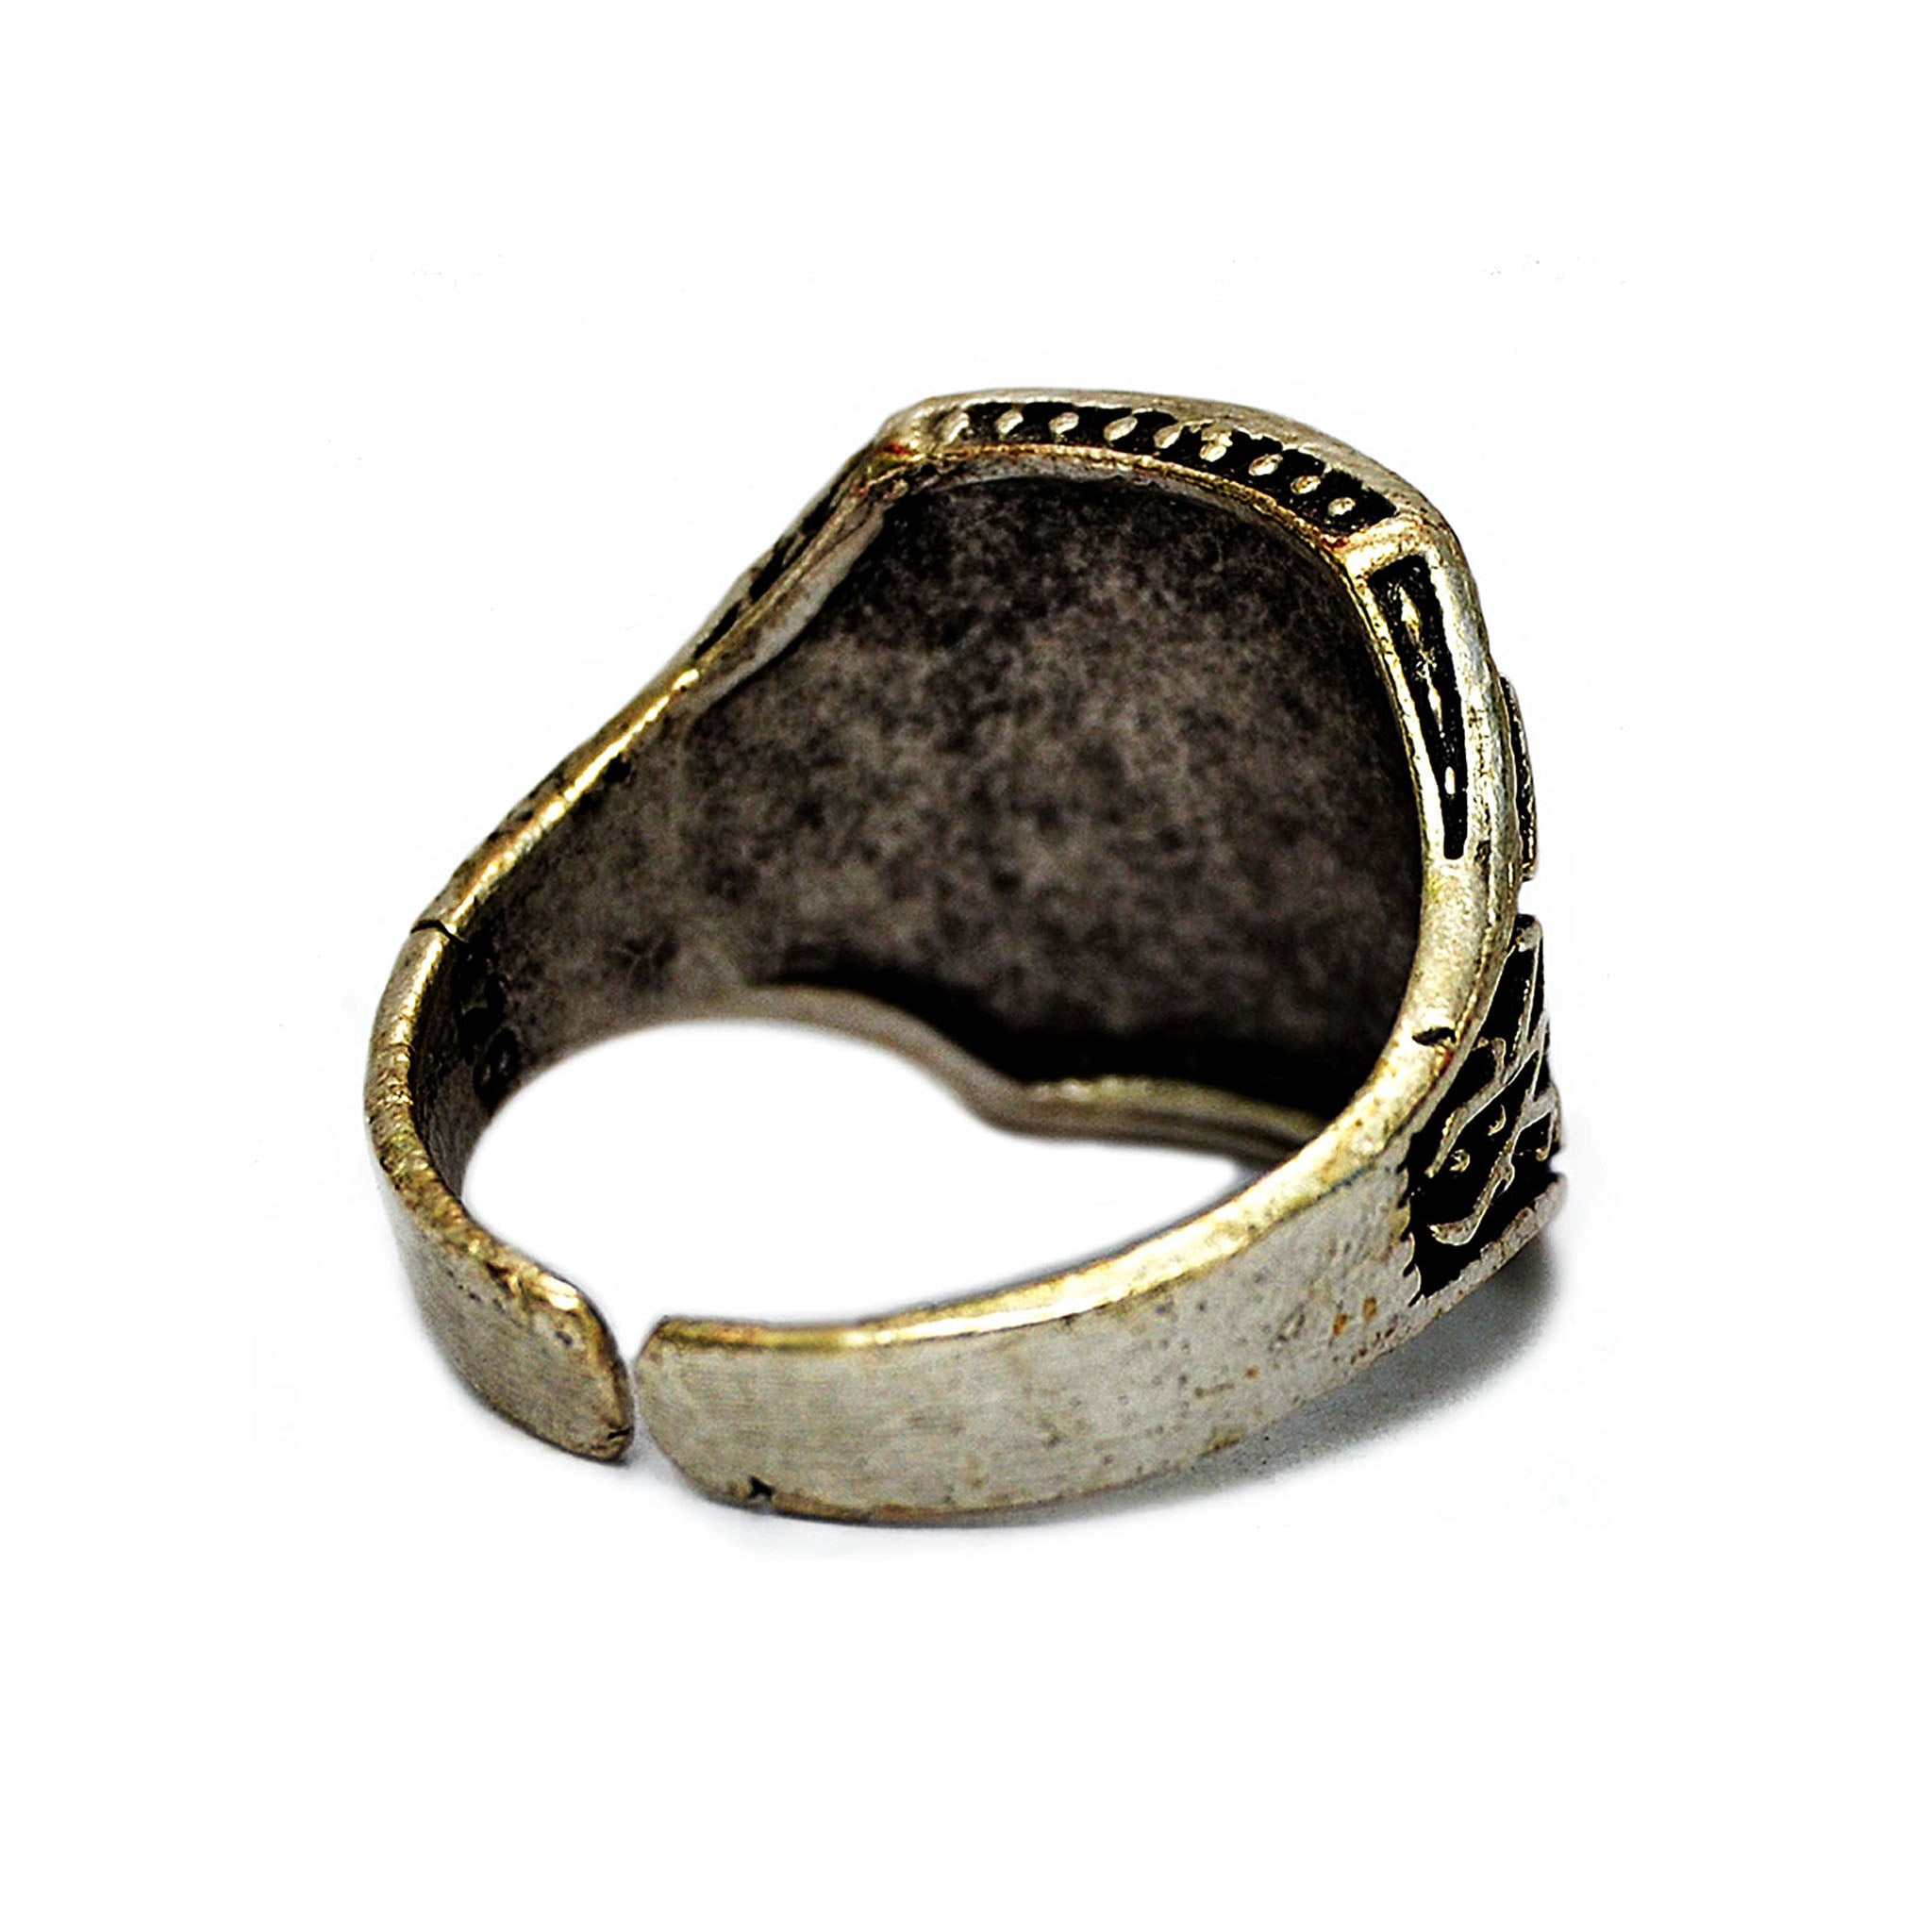 Adjustable celtic ring